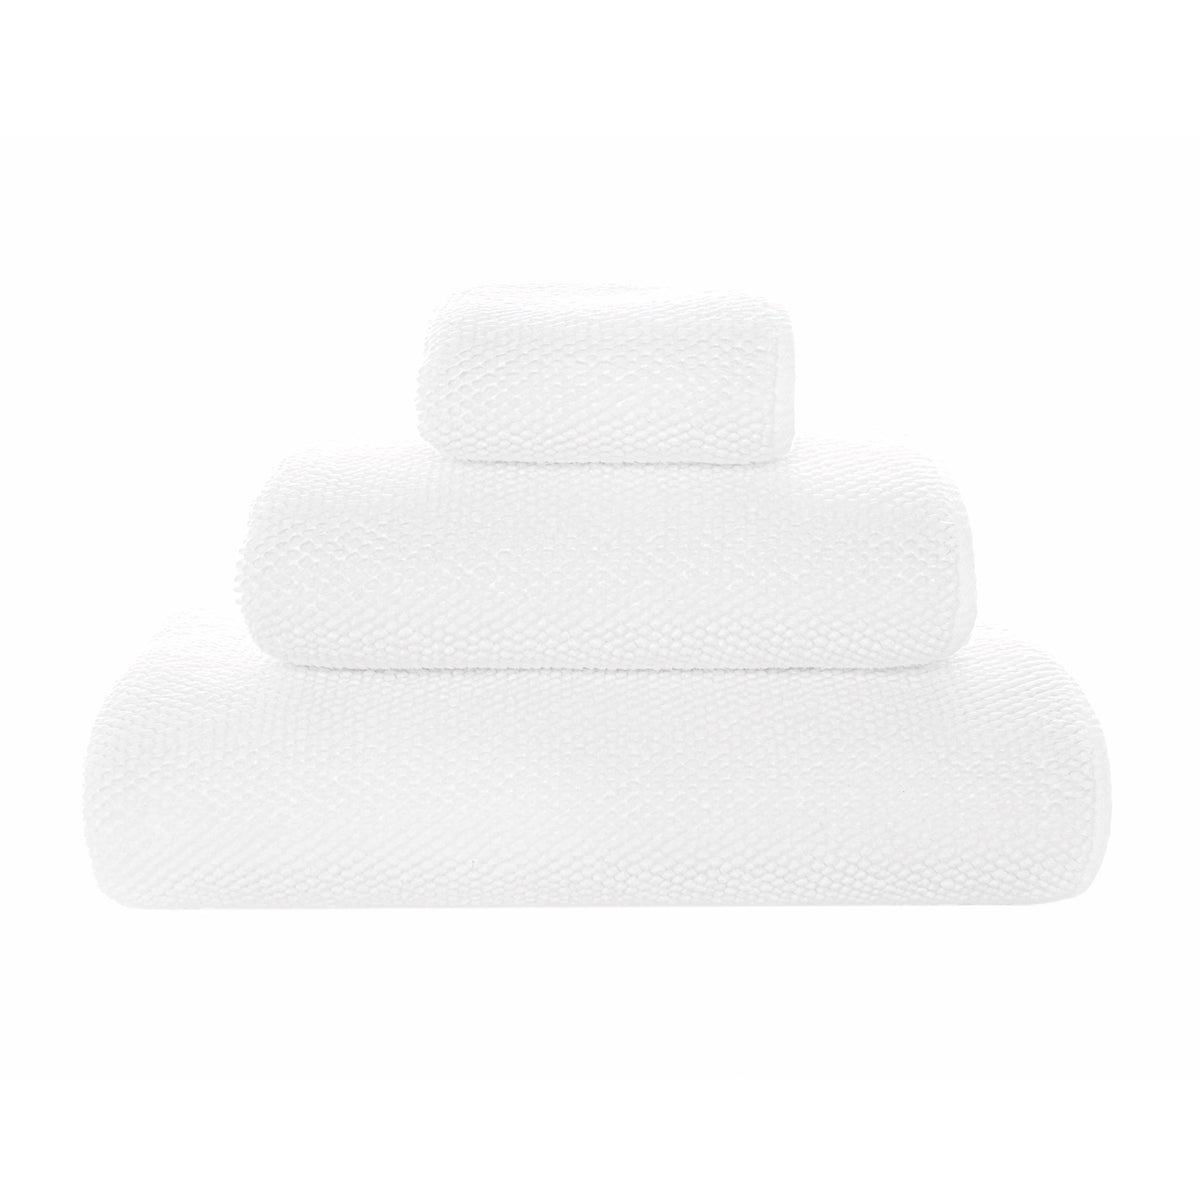 Silo Image of Graccioza Pearls Bath Towels in Color White